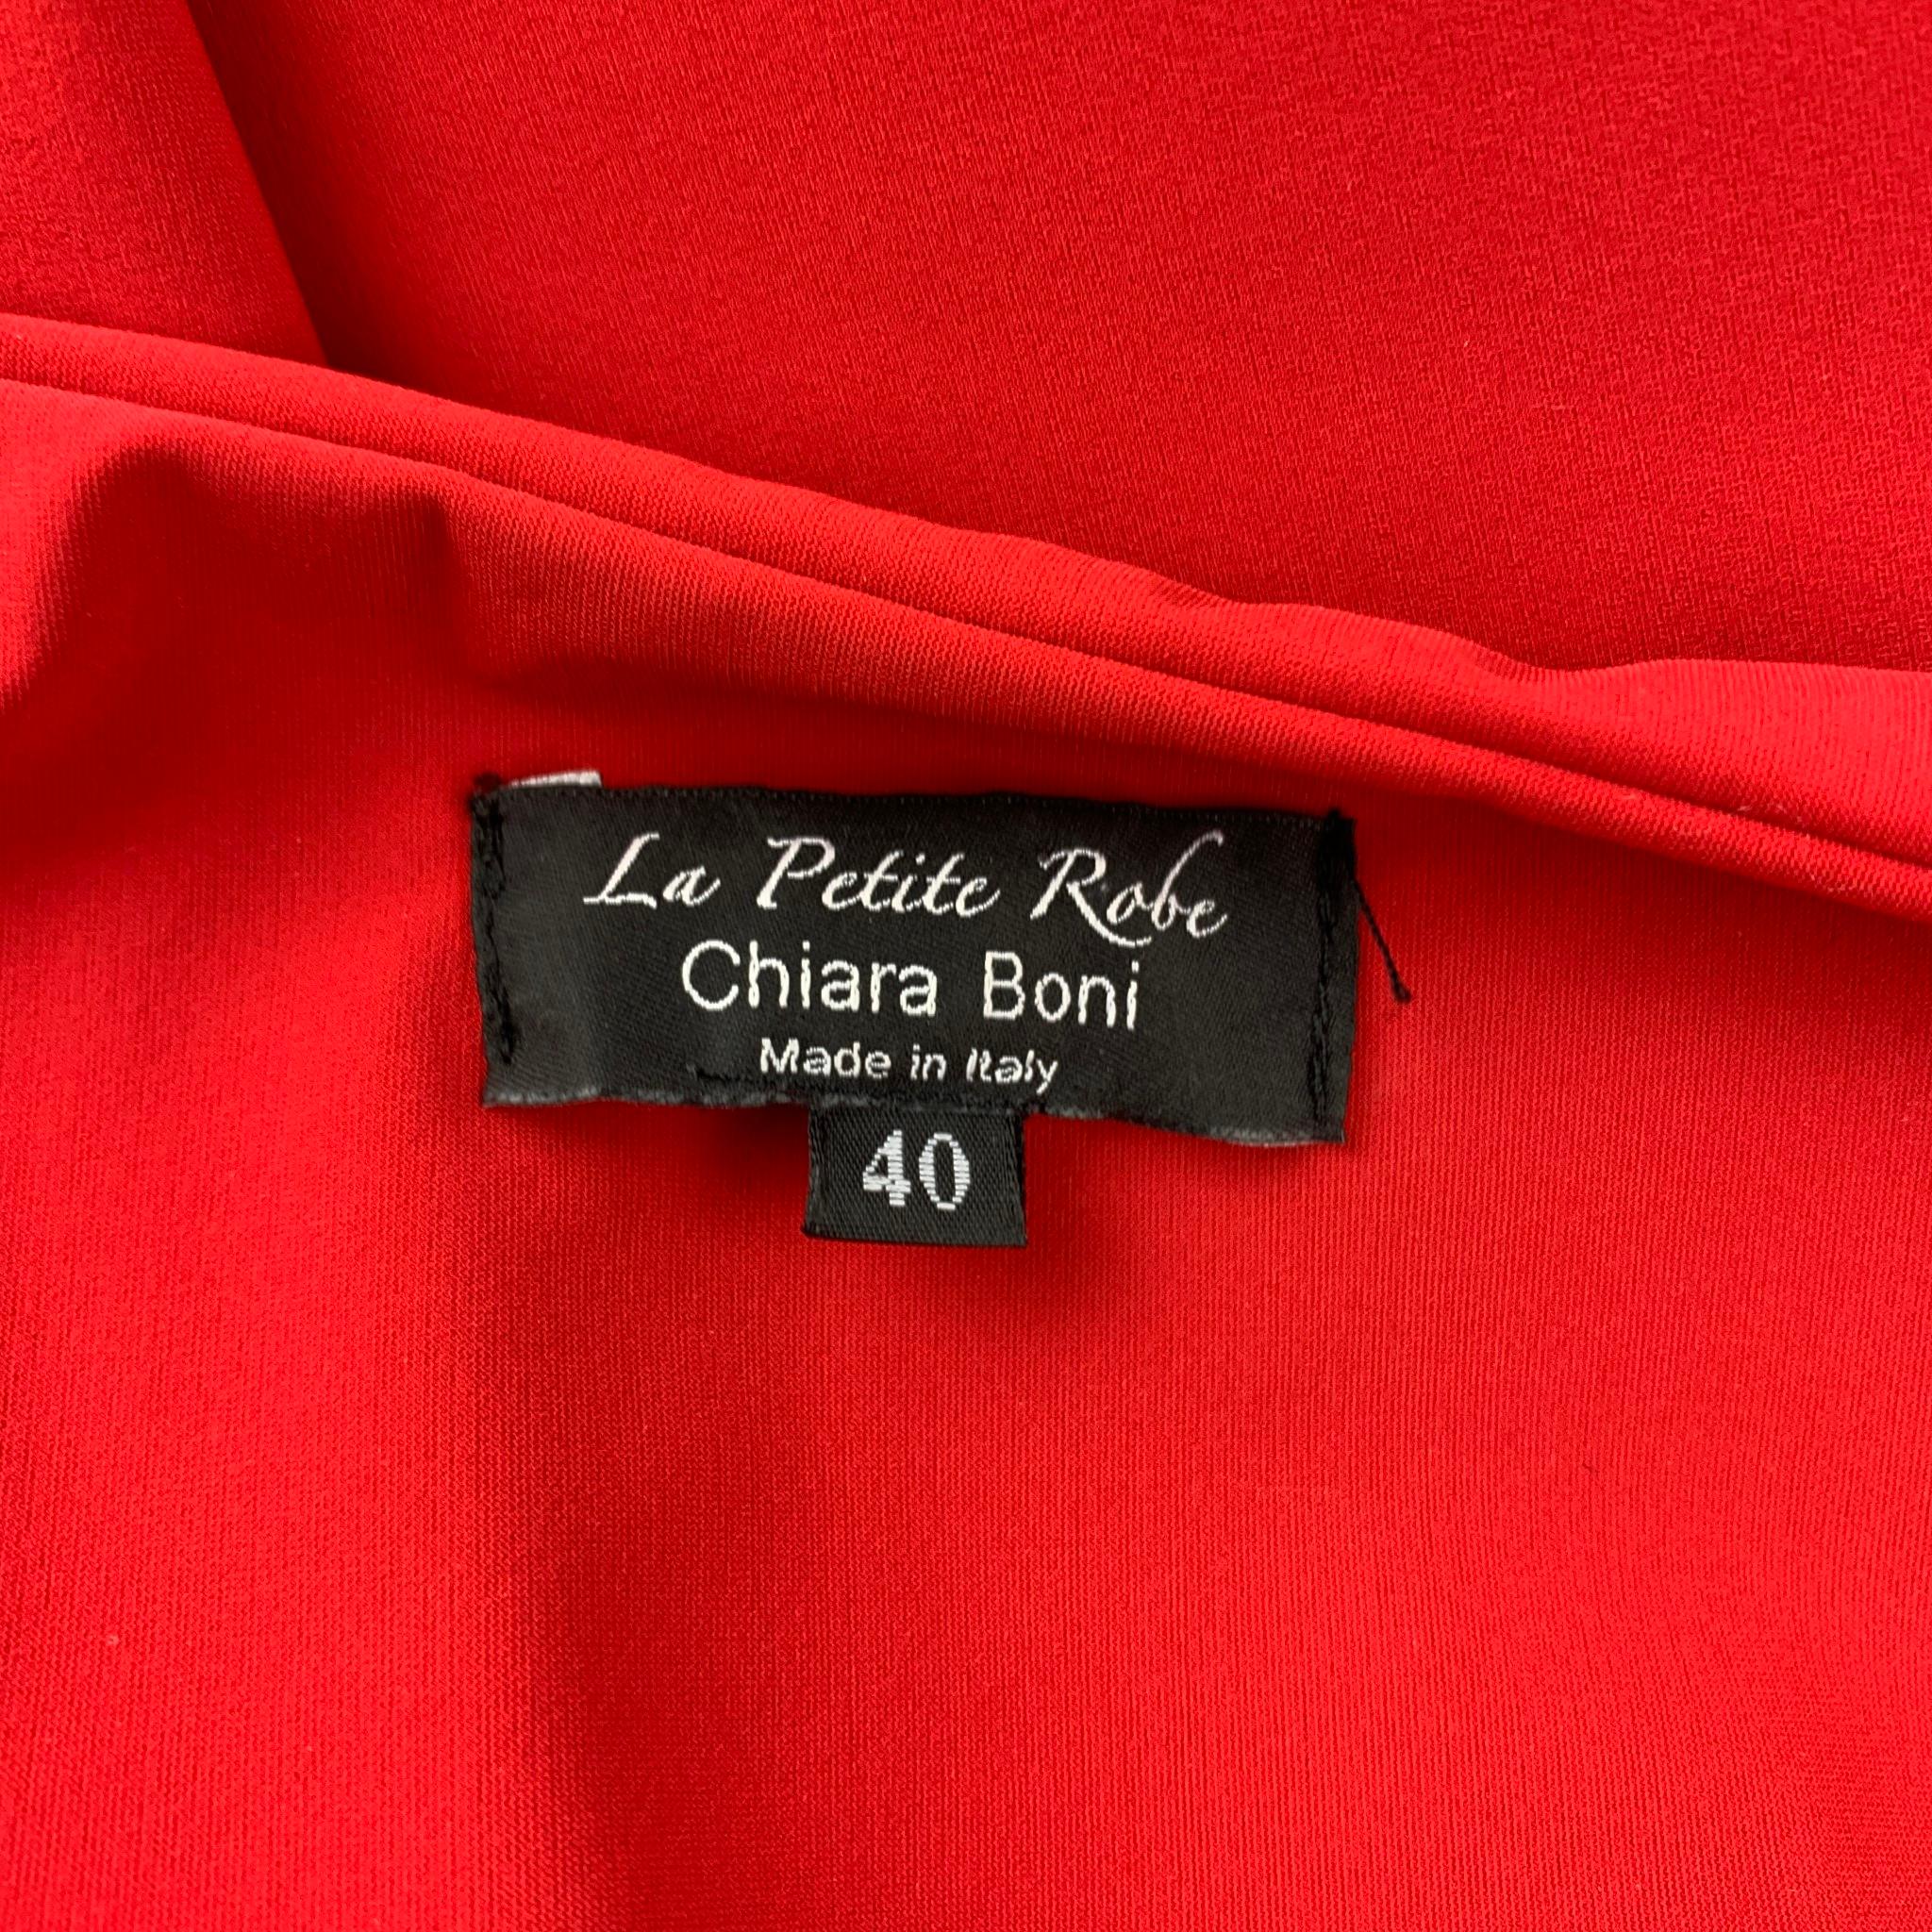 chiara boni red gown